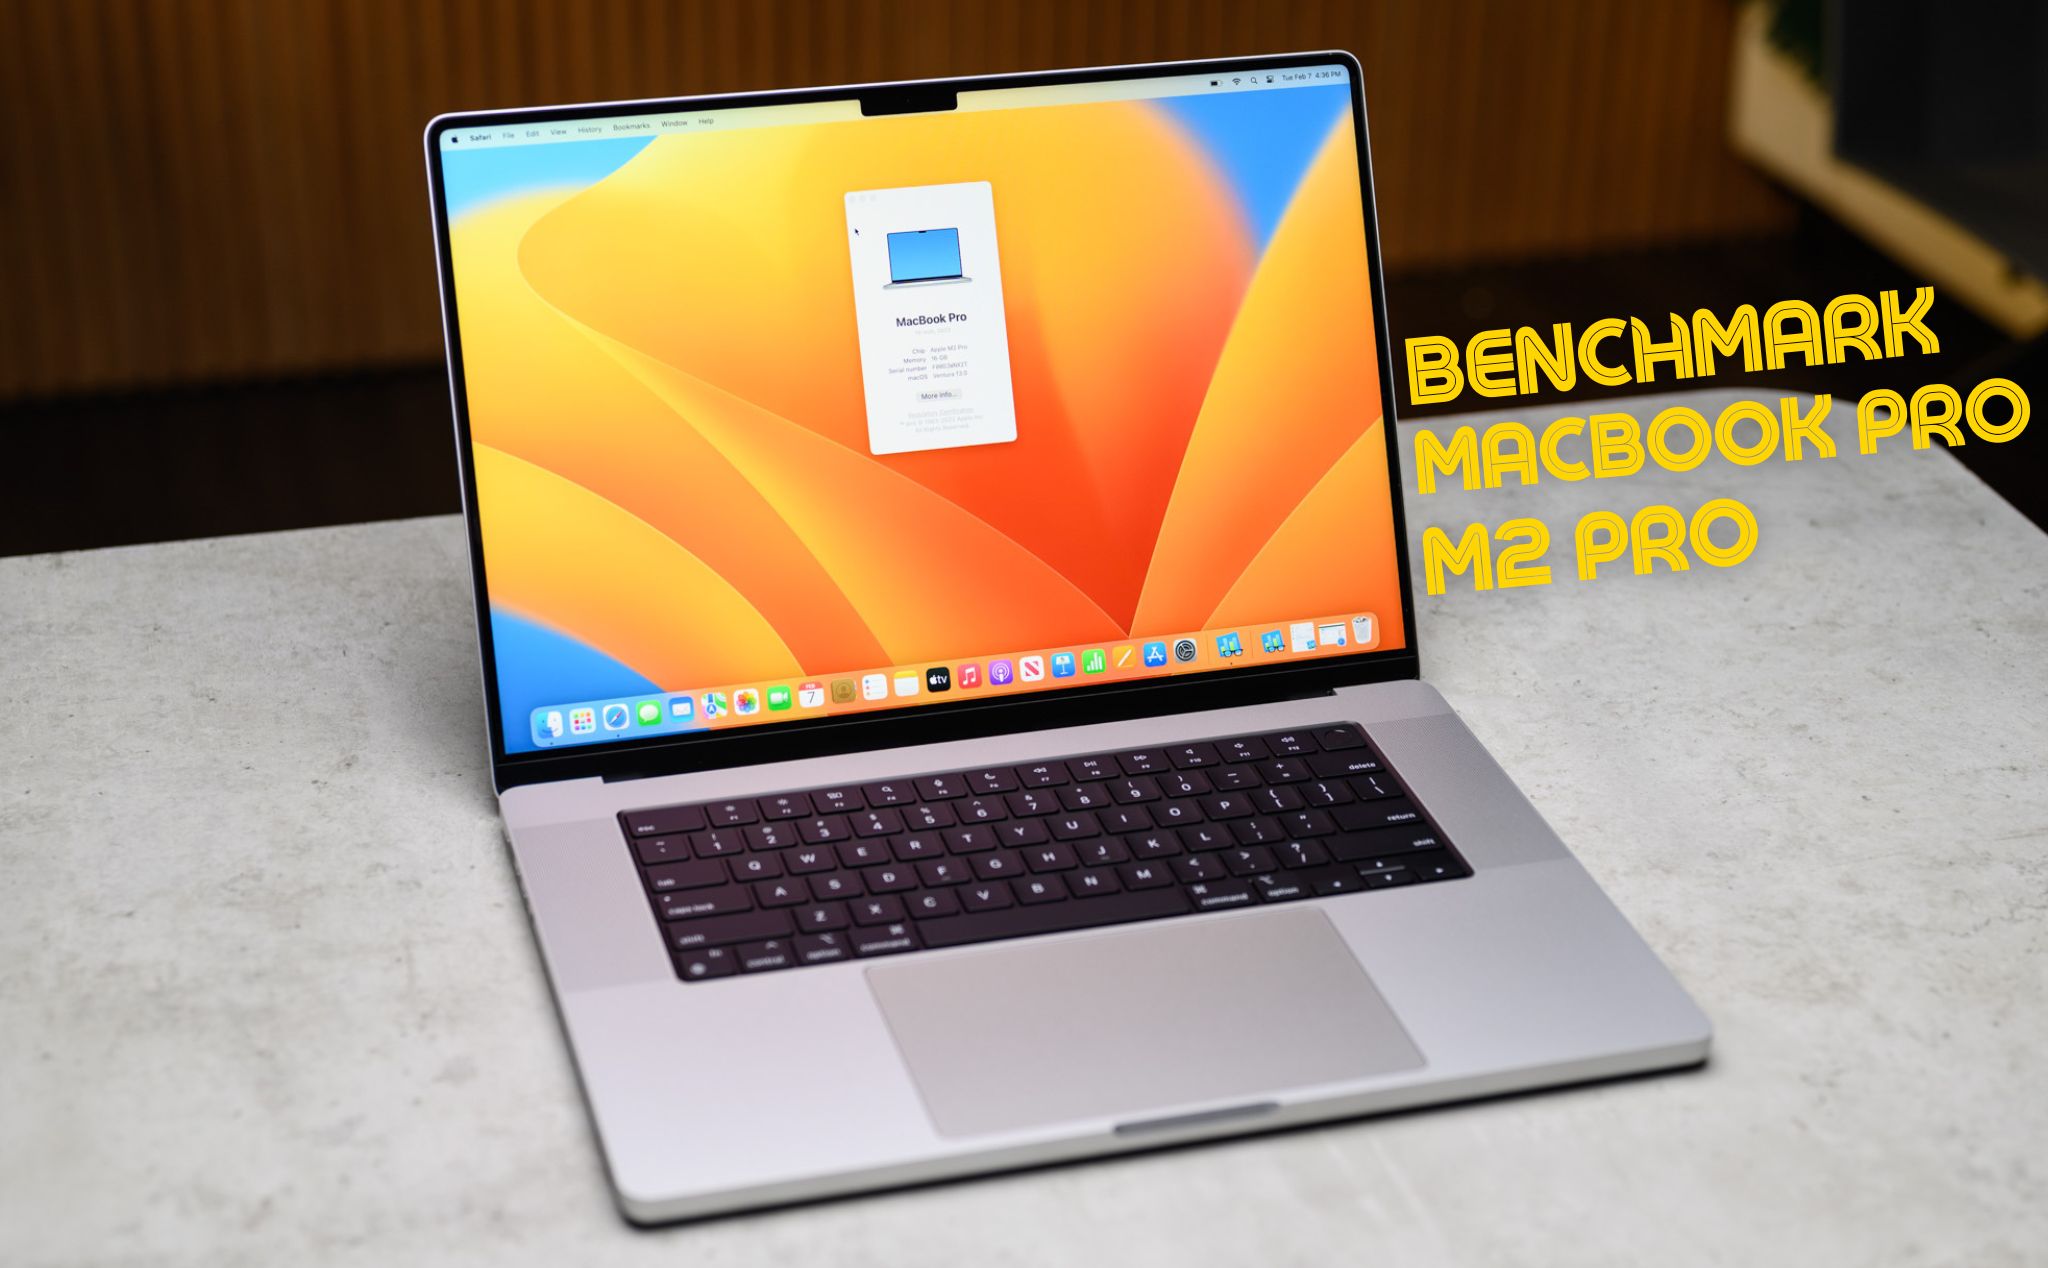 Benchmark MacBook Pro 16 inch M2 Pro: Có nhanh hơn nhưng anh em dùng M1 có thể chờ đến M3